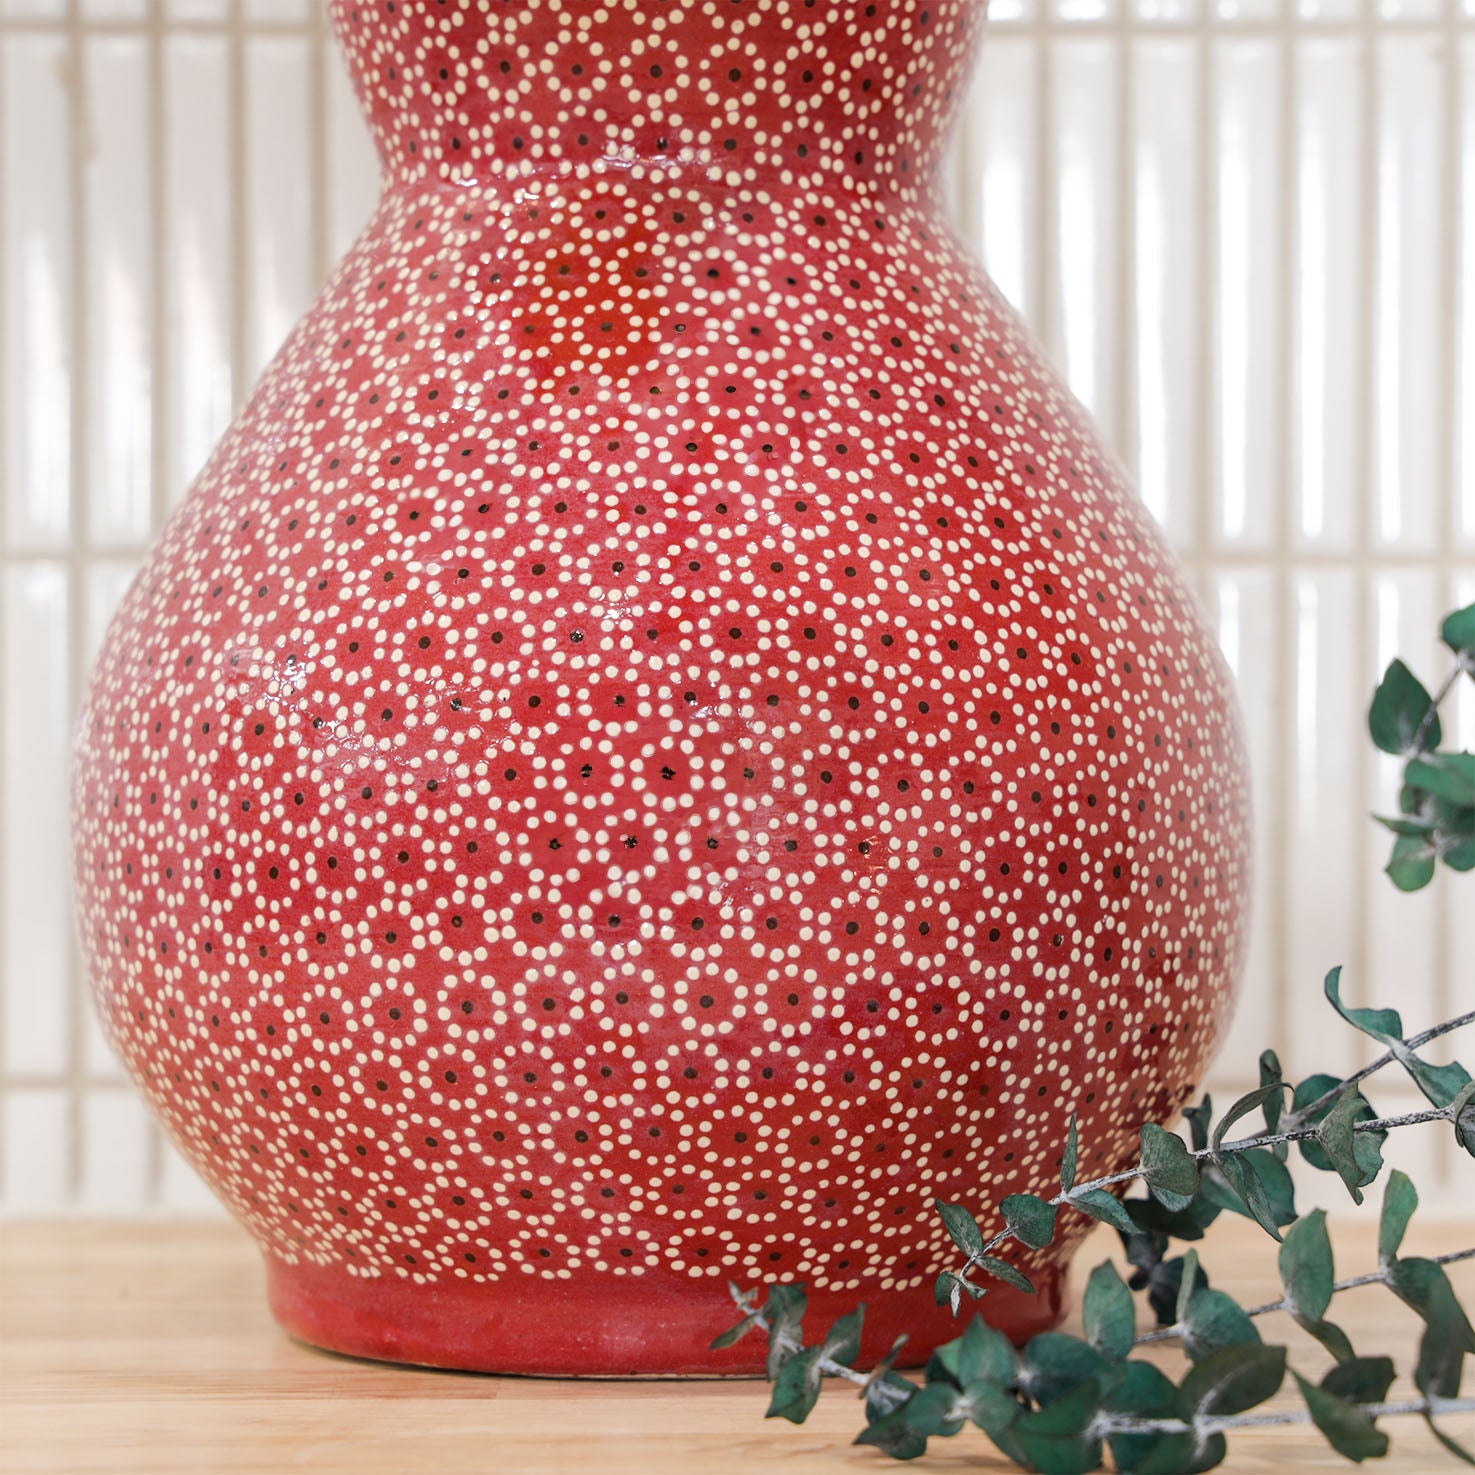 Capula Clay Round Vase with Neck